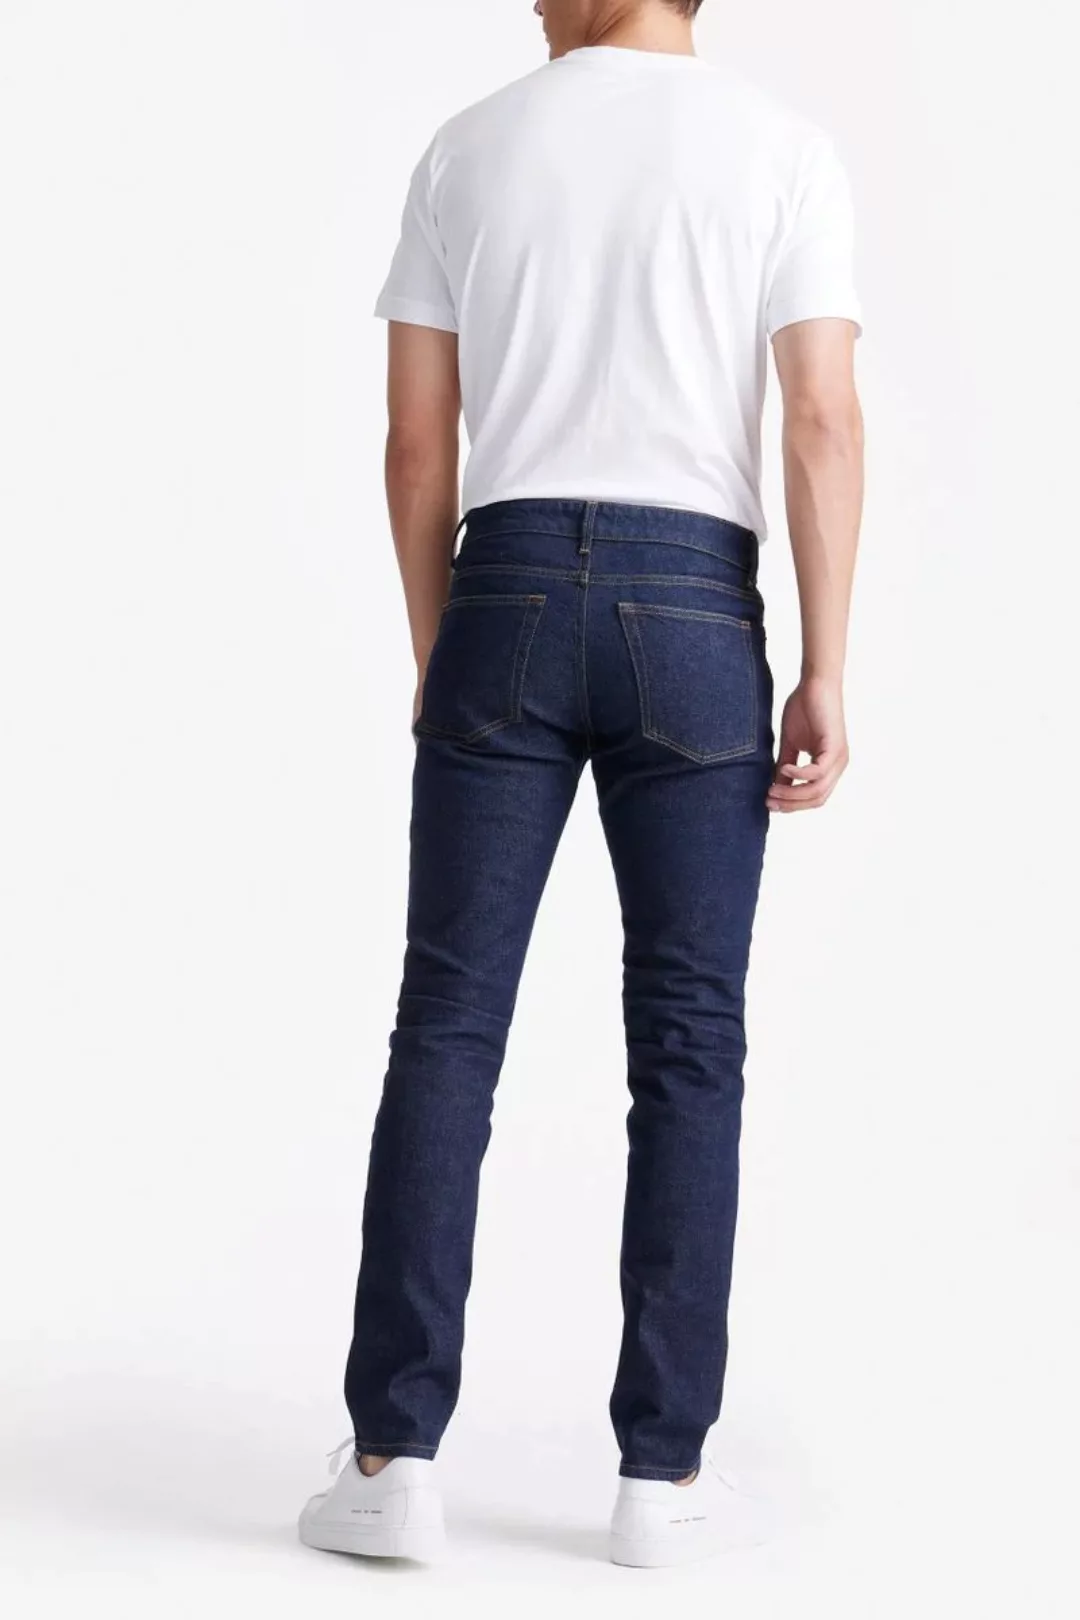 King Essentials The Jason Jeans Navy - Größe W 30 - L 32 günstig online kaufen